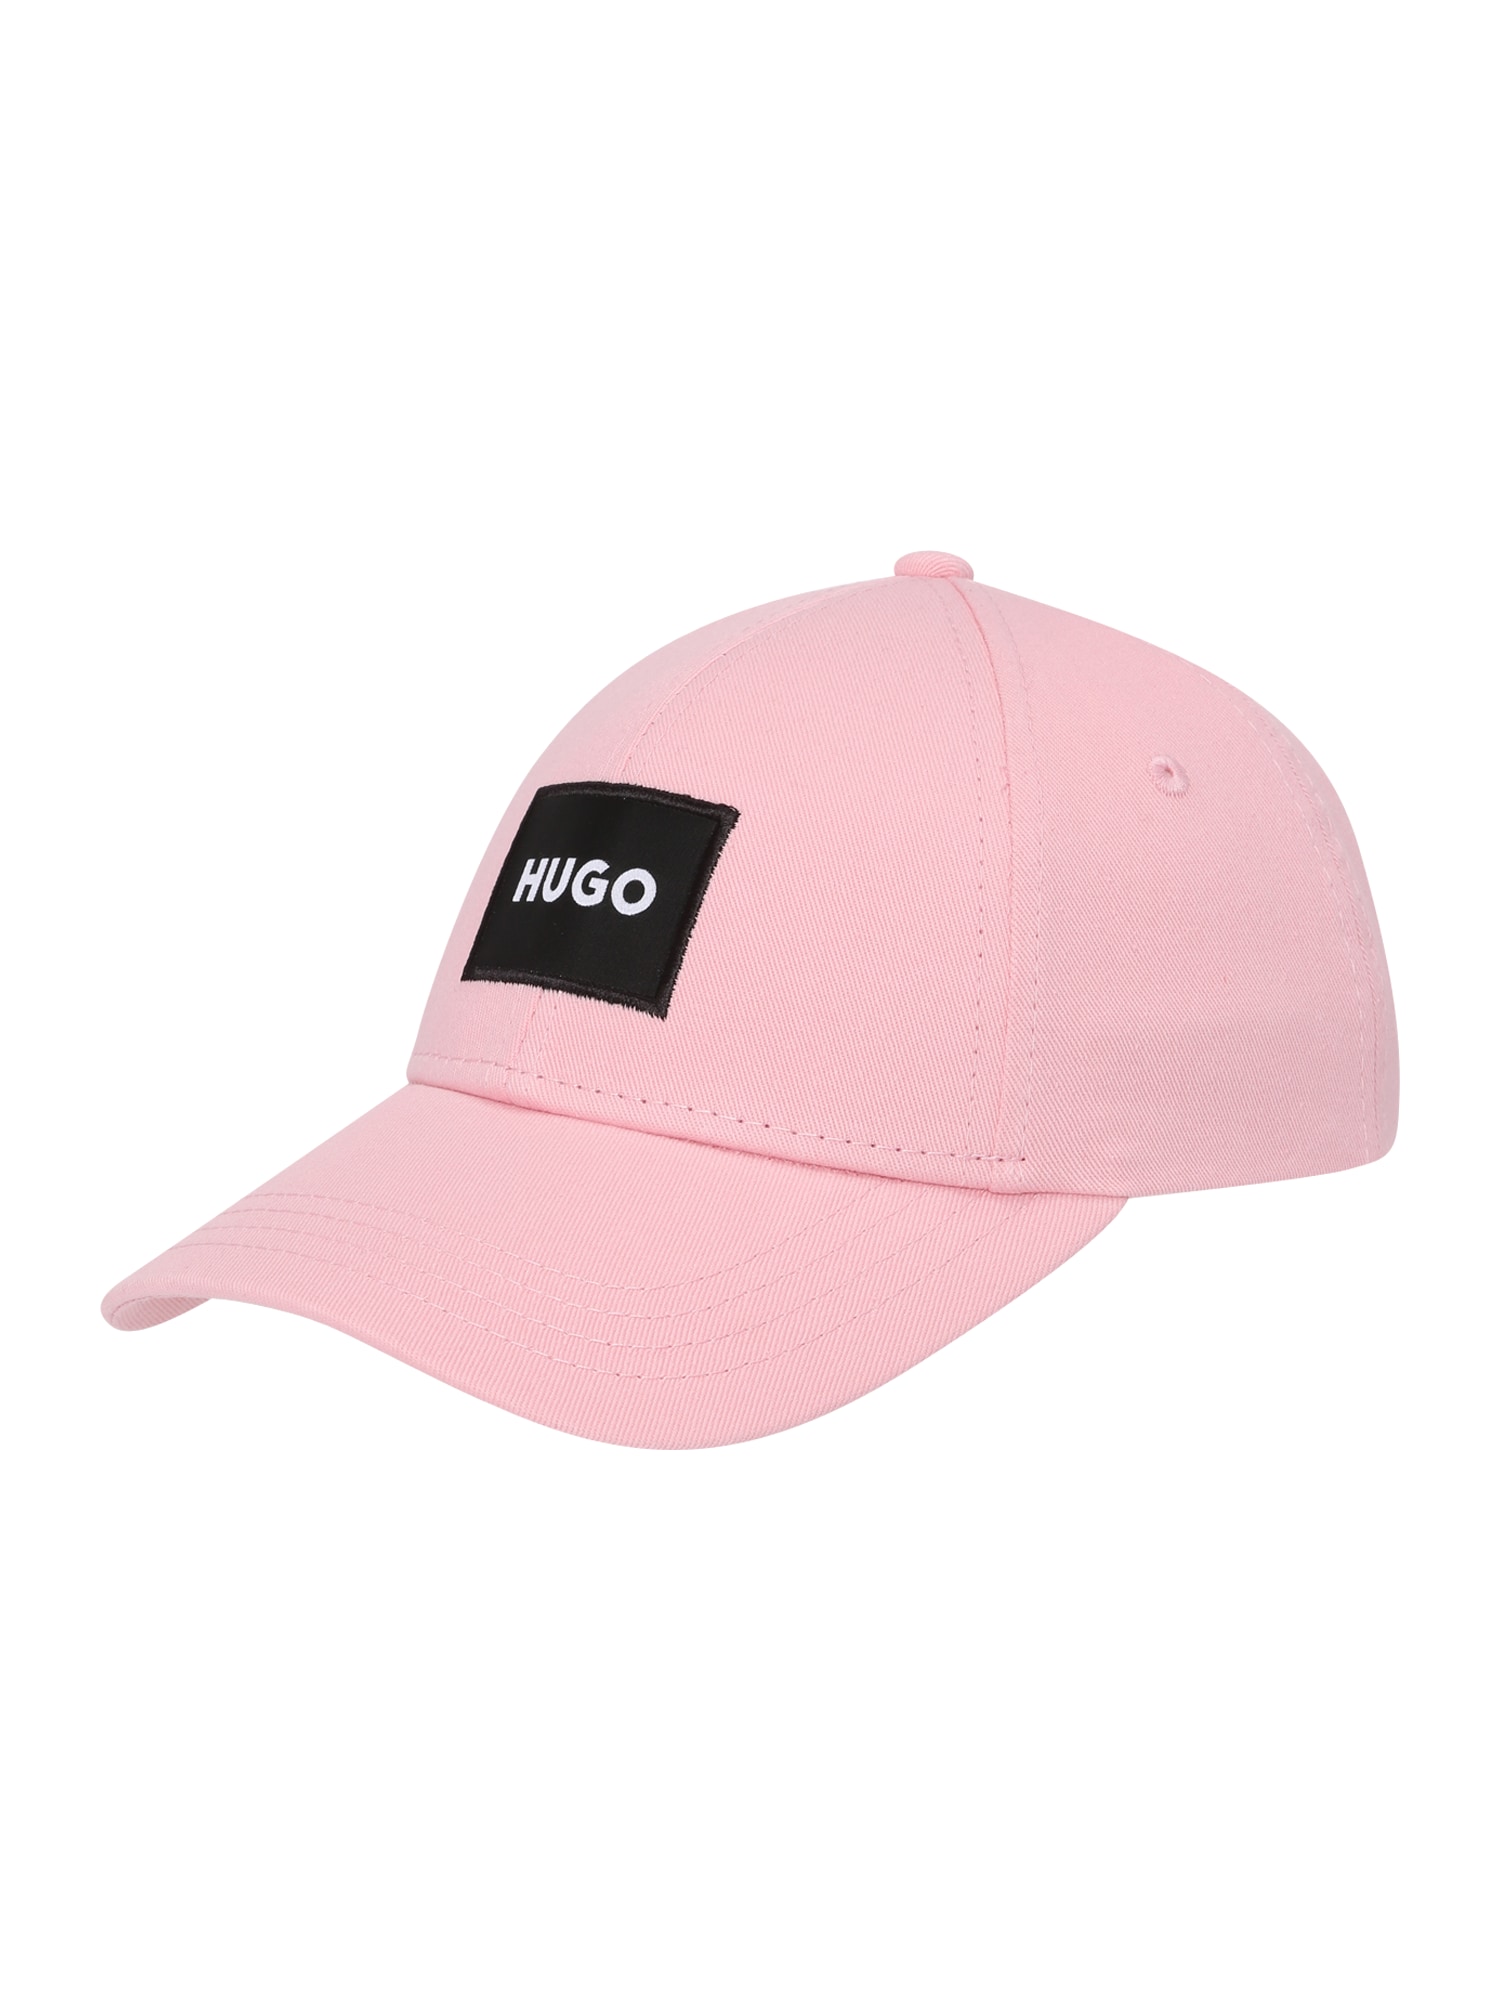 HUGO HUGO Cap pink / schwarz / weiß